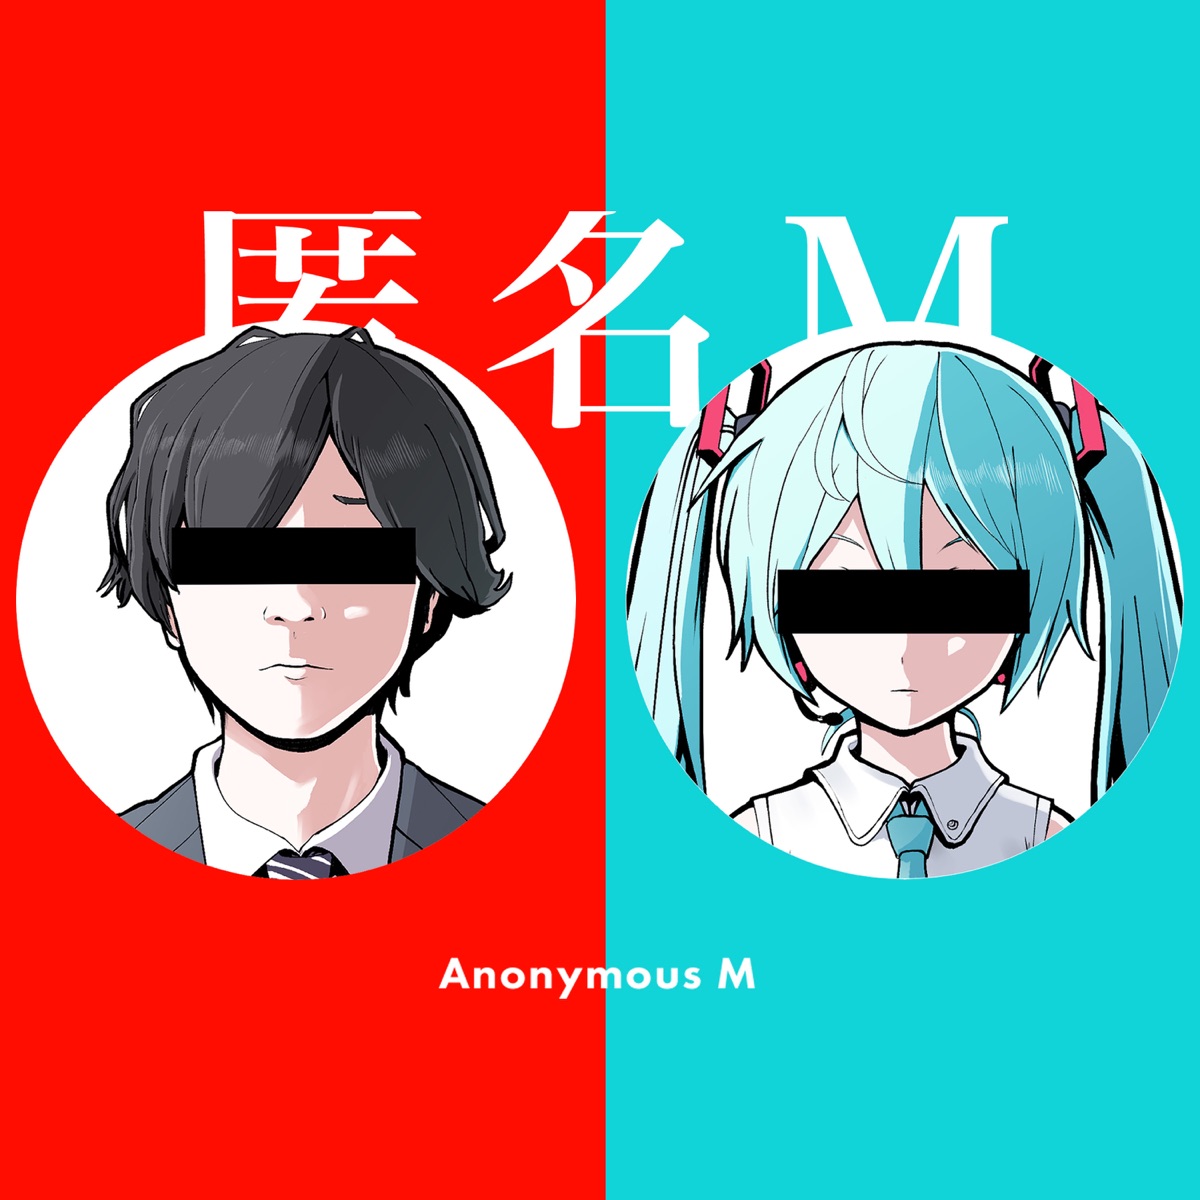 『ピノキオピー - 匿名M feat. 初音ミク・ARuFa』収録の『匿名M feat. 初音ミク・ARuFa』ジャケット